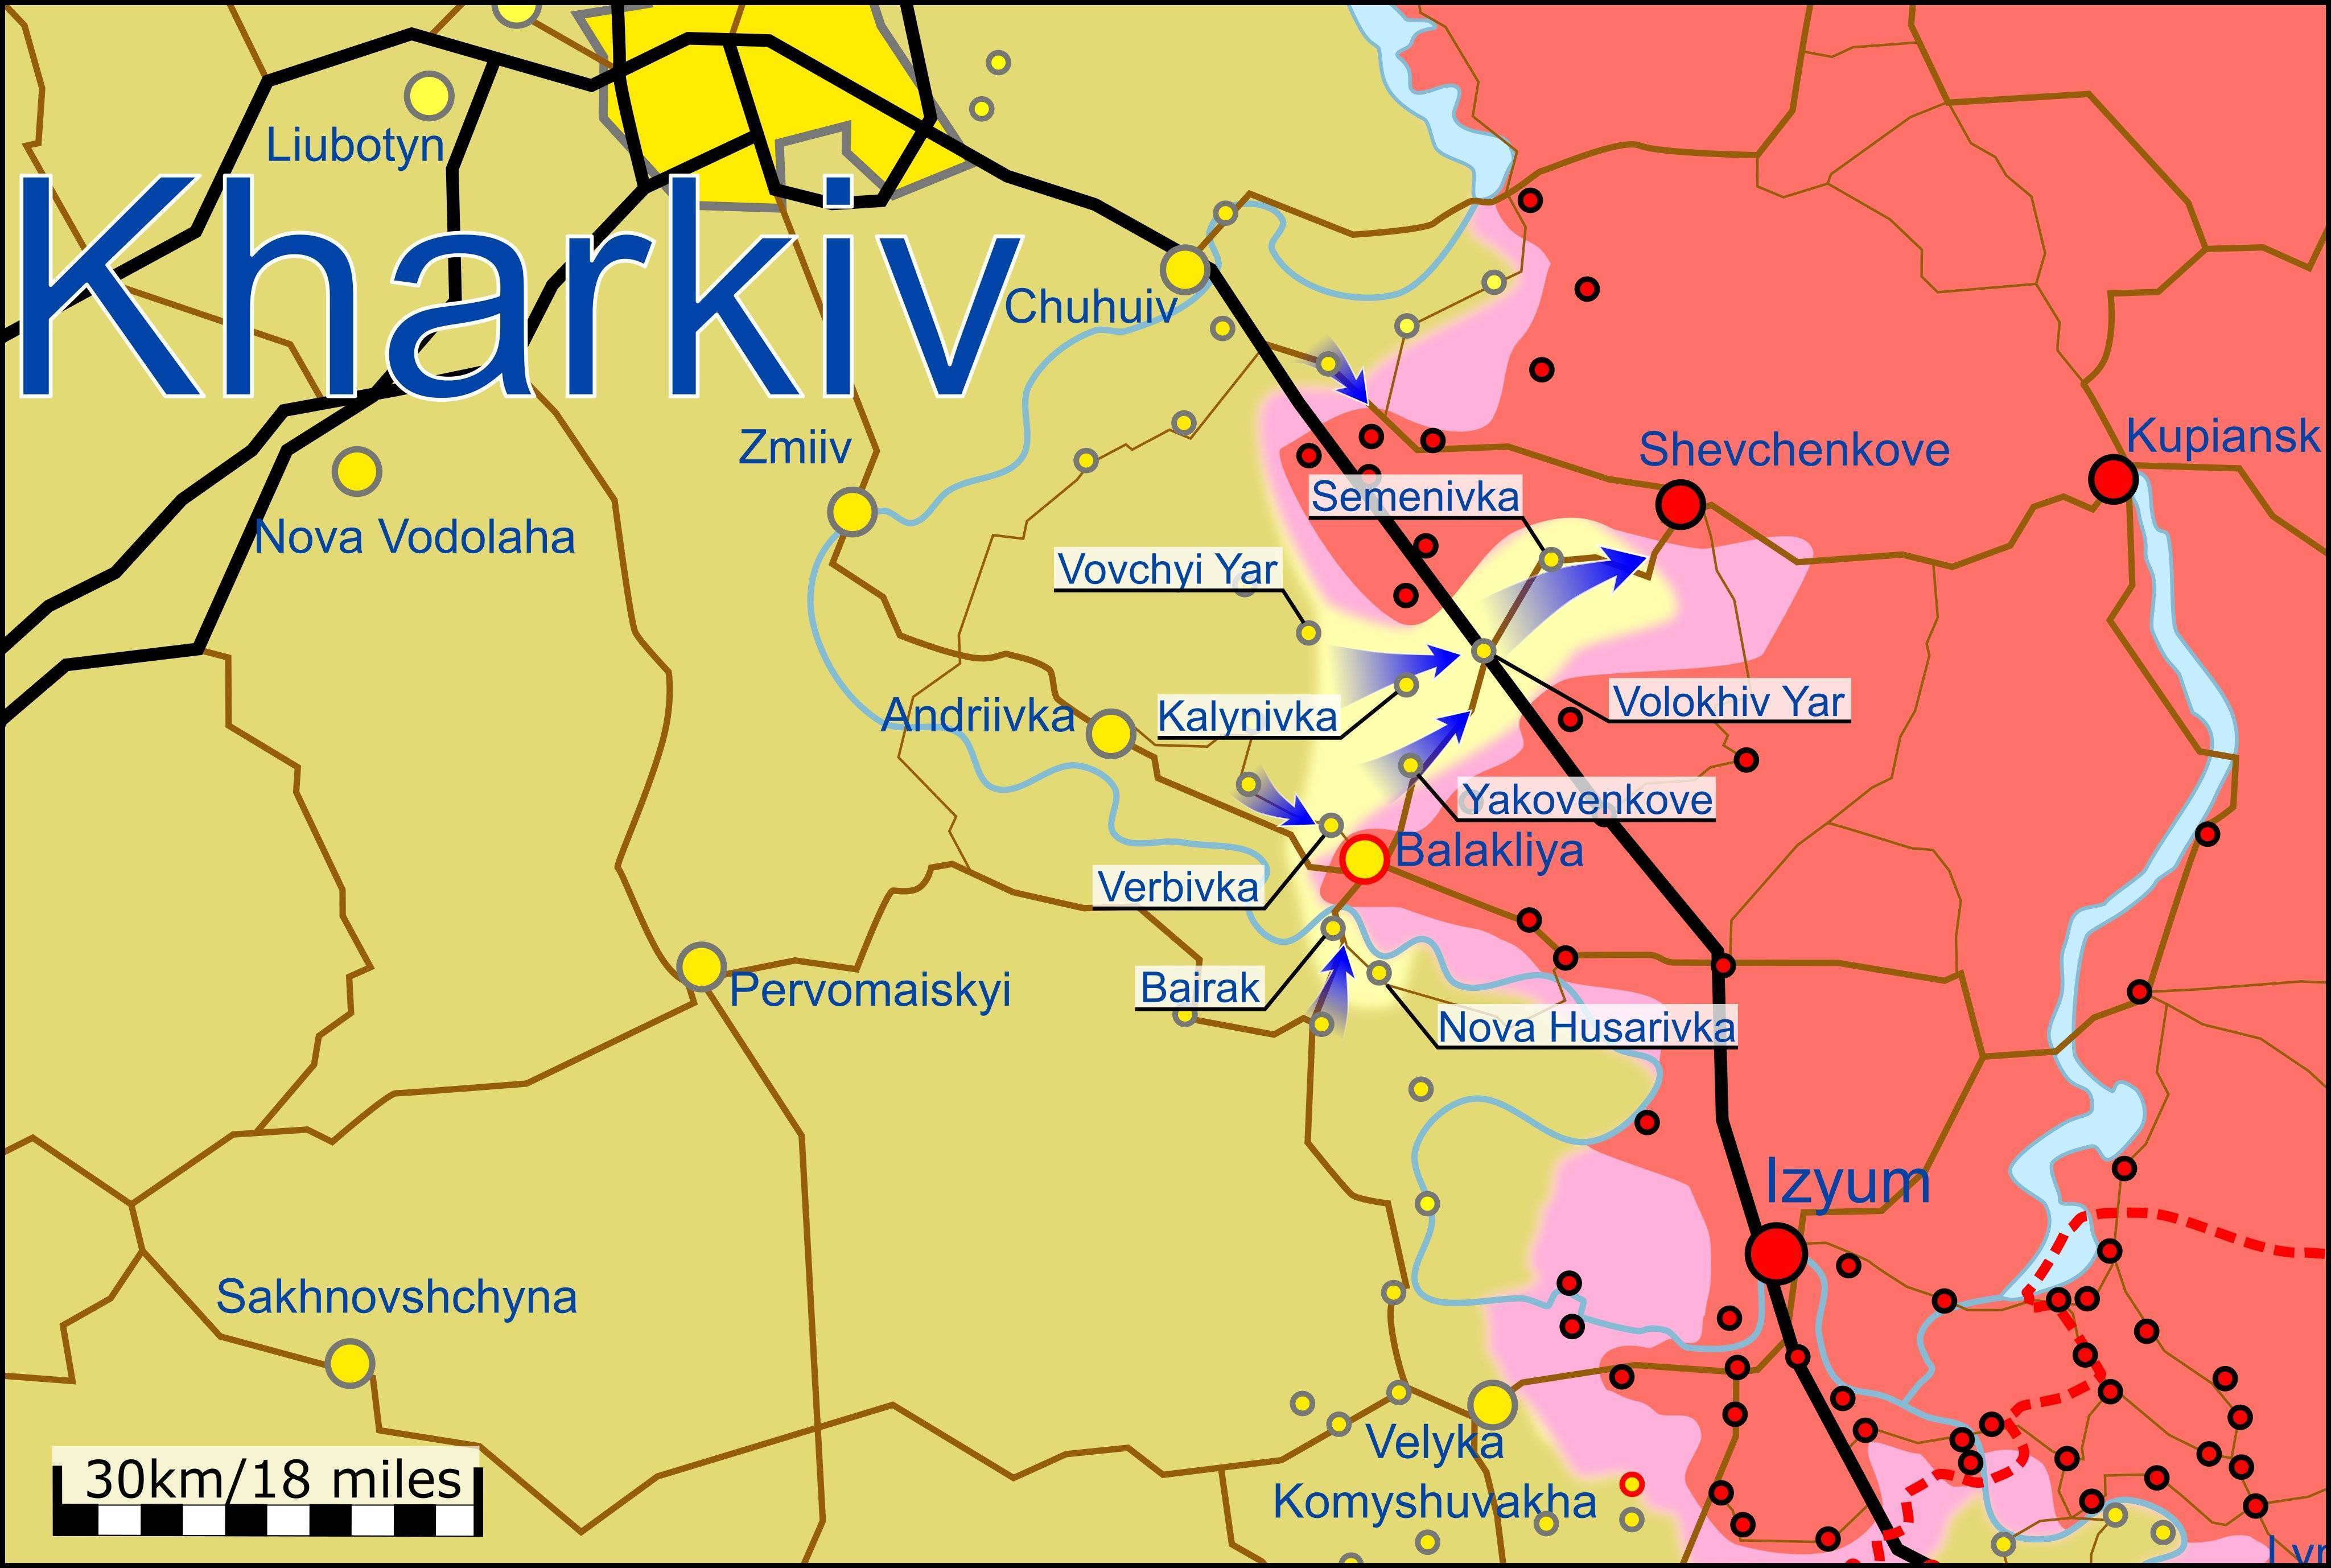 乌军目前在赫尔松,哈尔科夫,顿巴斯都闹出了不小的动静,这让人非常